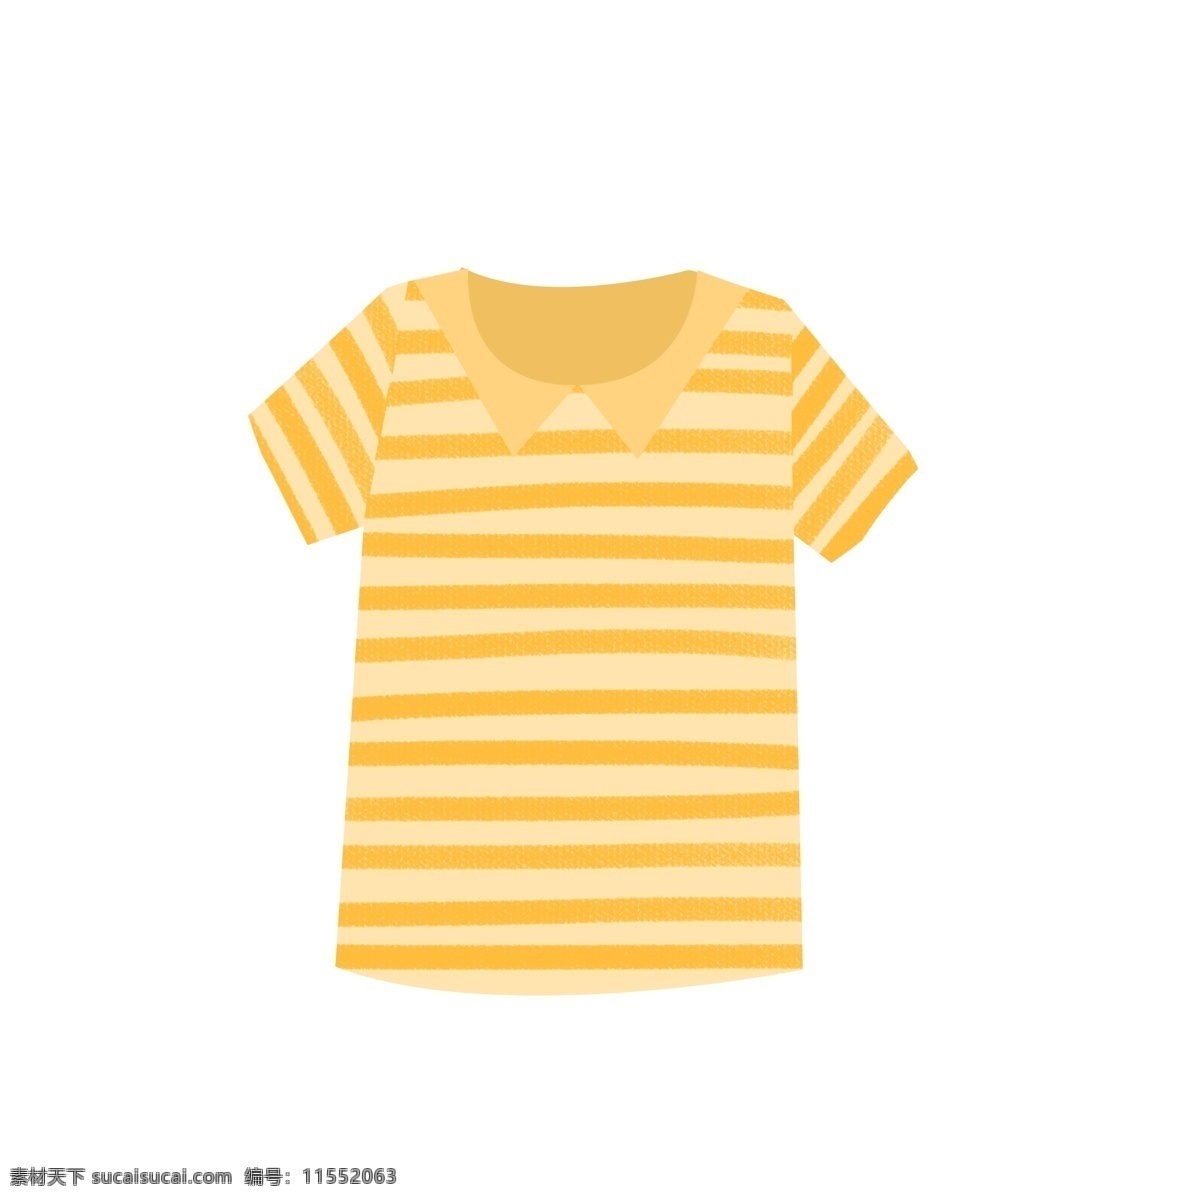 宝宝 衣服 黄色 条纹 短袖 上衣 元素 秋天 可爱 宝宝衣服